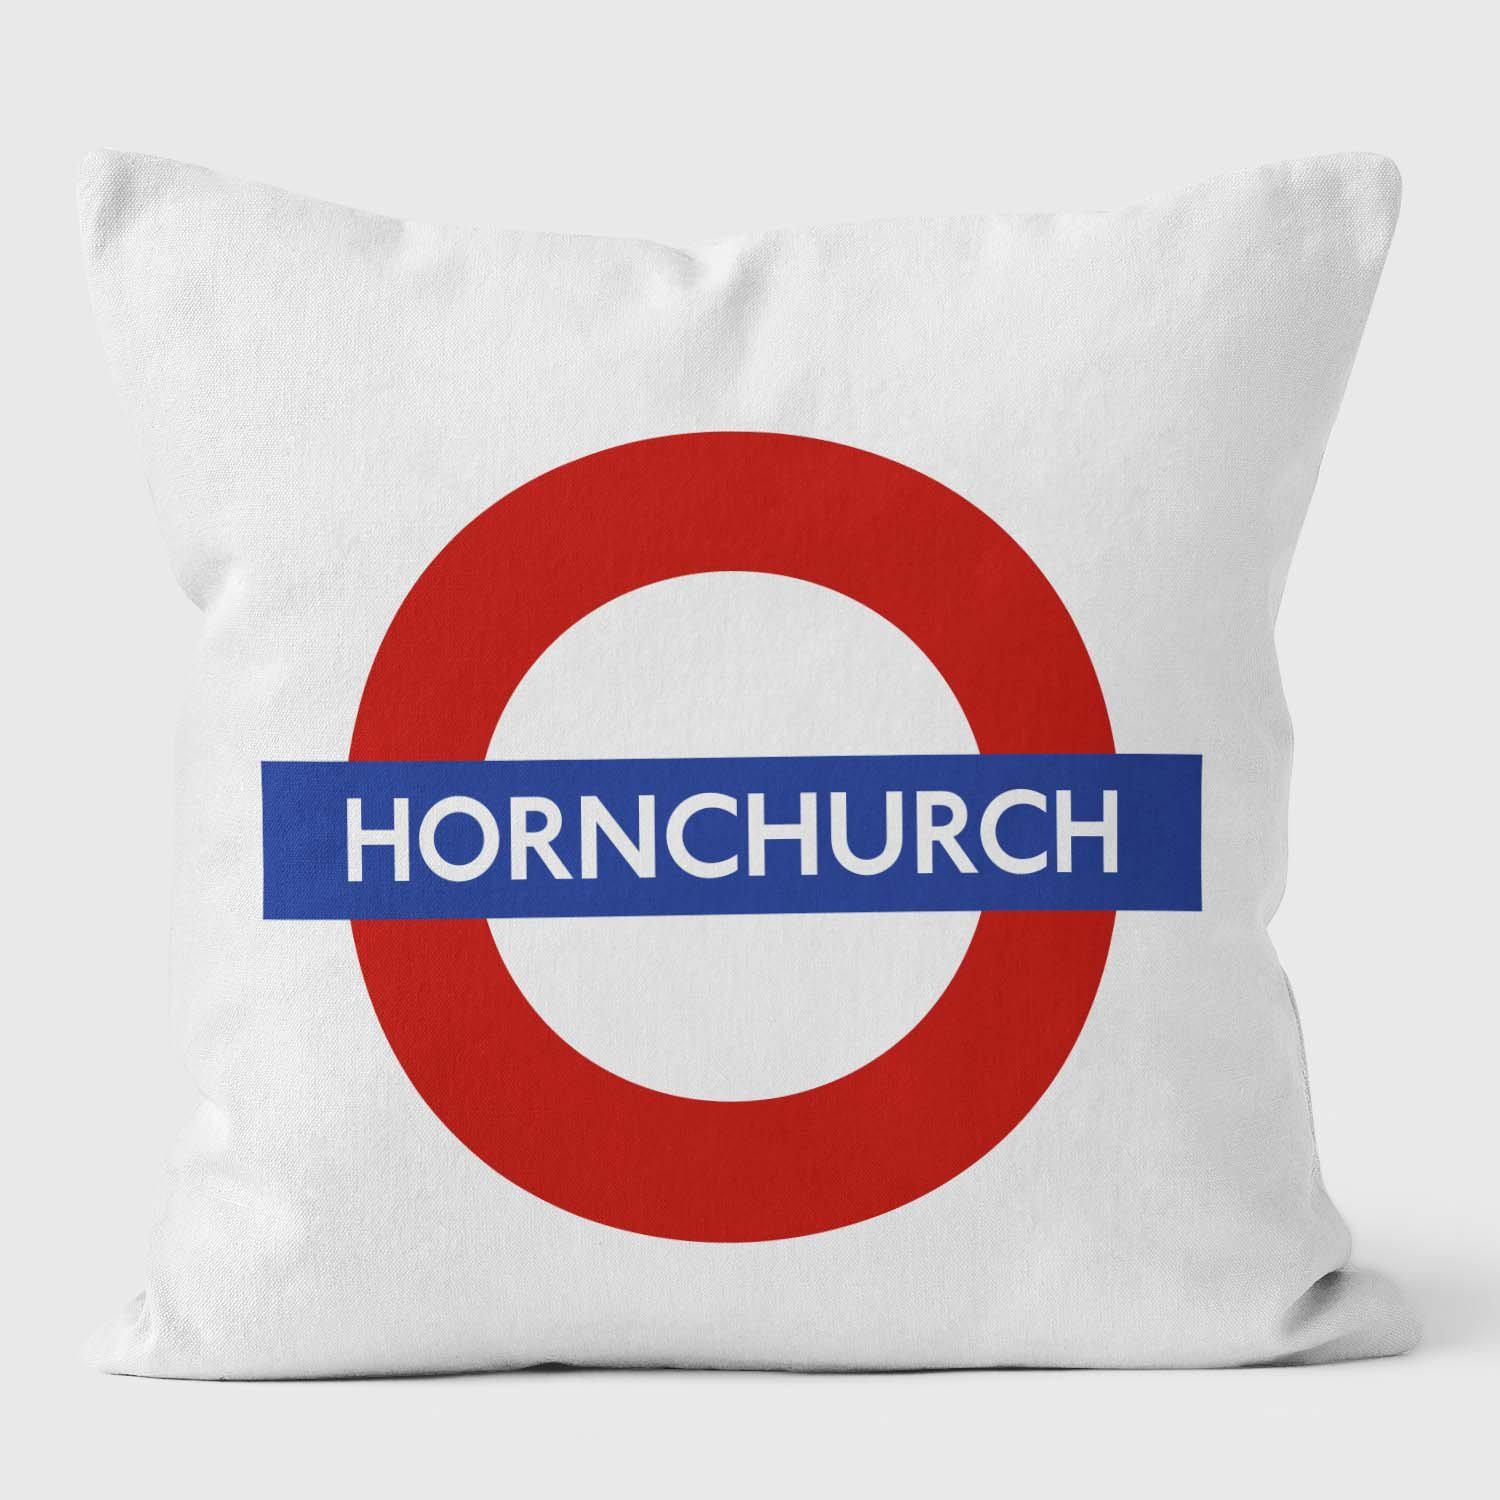 Hornchurch London Underground Tube Station Roundel Cushion - Handmade Cushions UK - WeLoveCushions